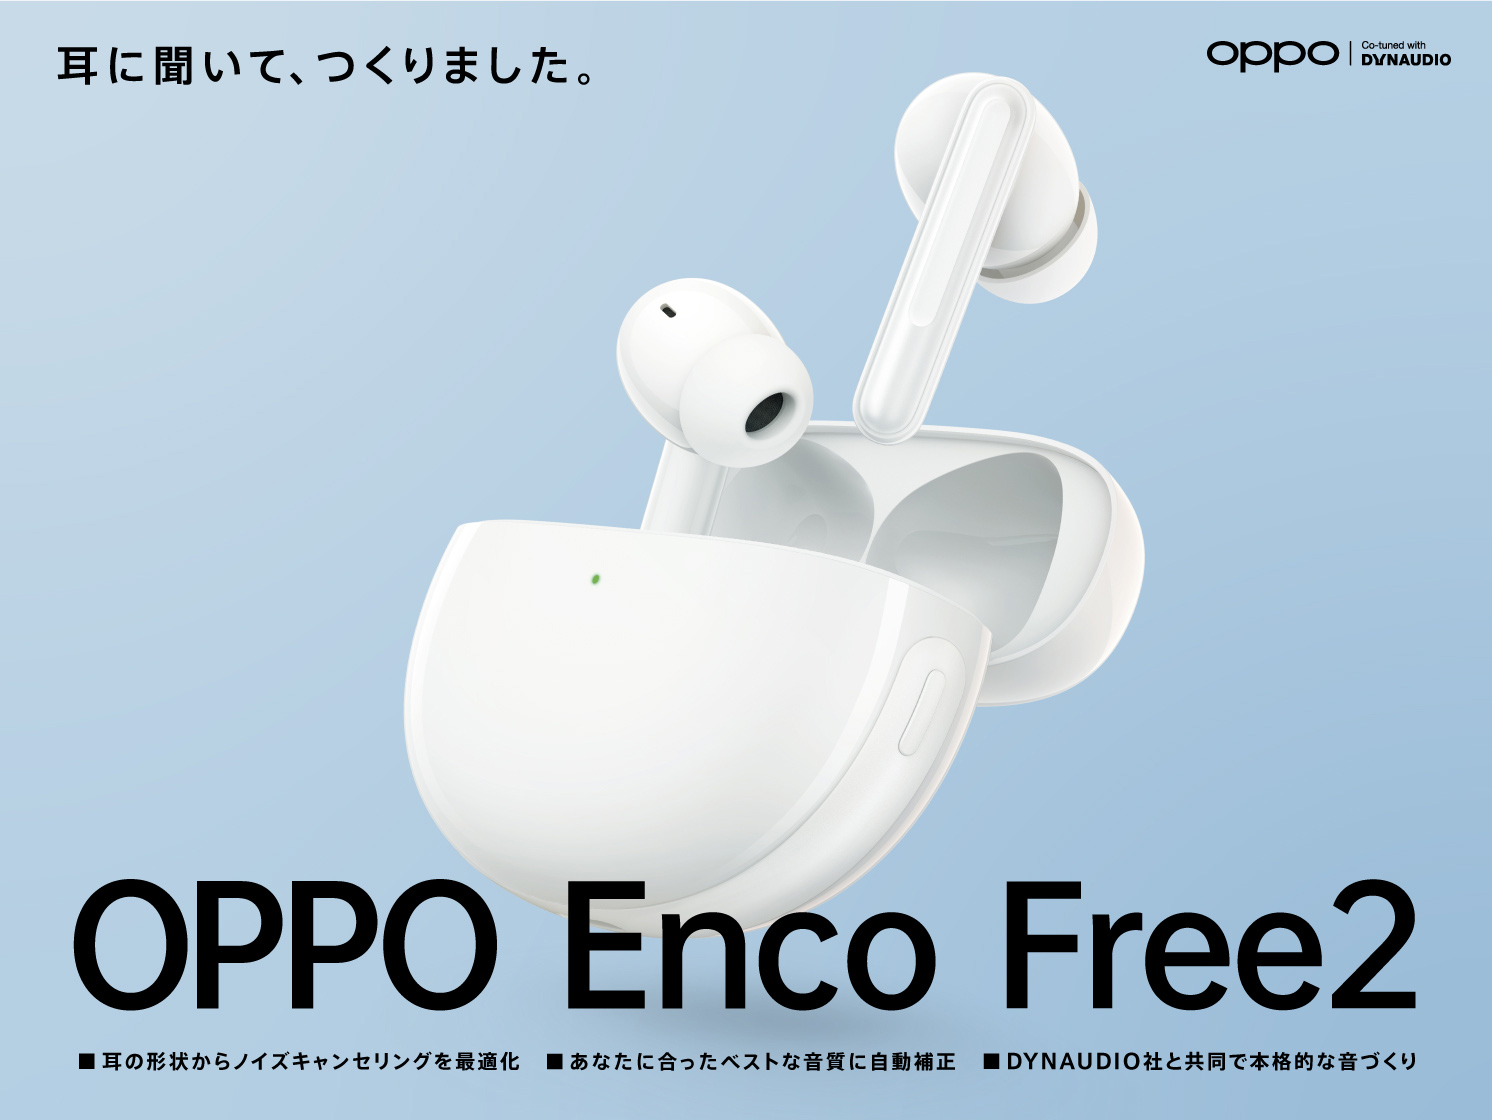 OPPO、完全ワイヤレスイヤホン「OPPO Enco Free2」を8月27日より発売 